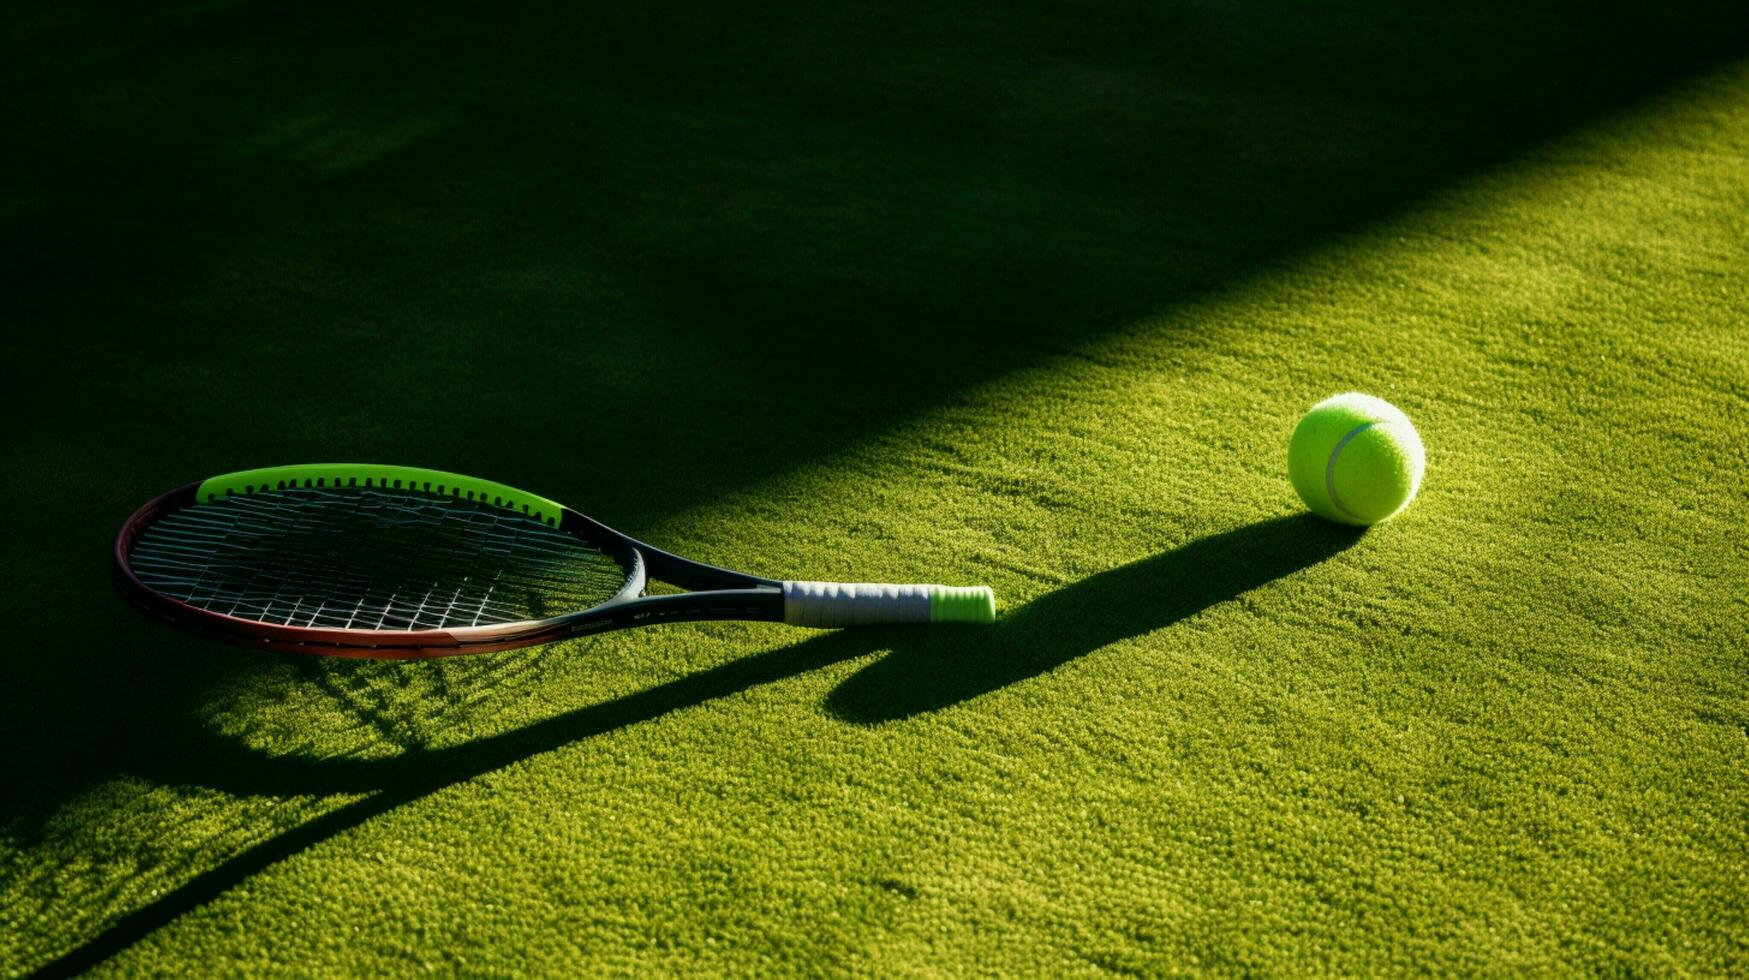 Tennis Ball Schläger und Schatten auf Grün Gras foto